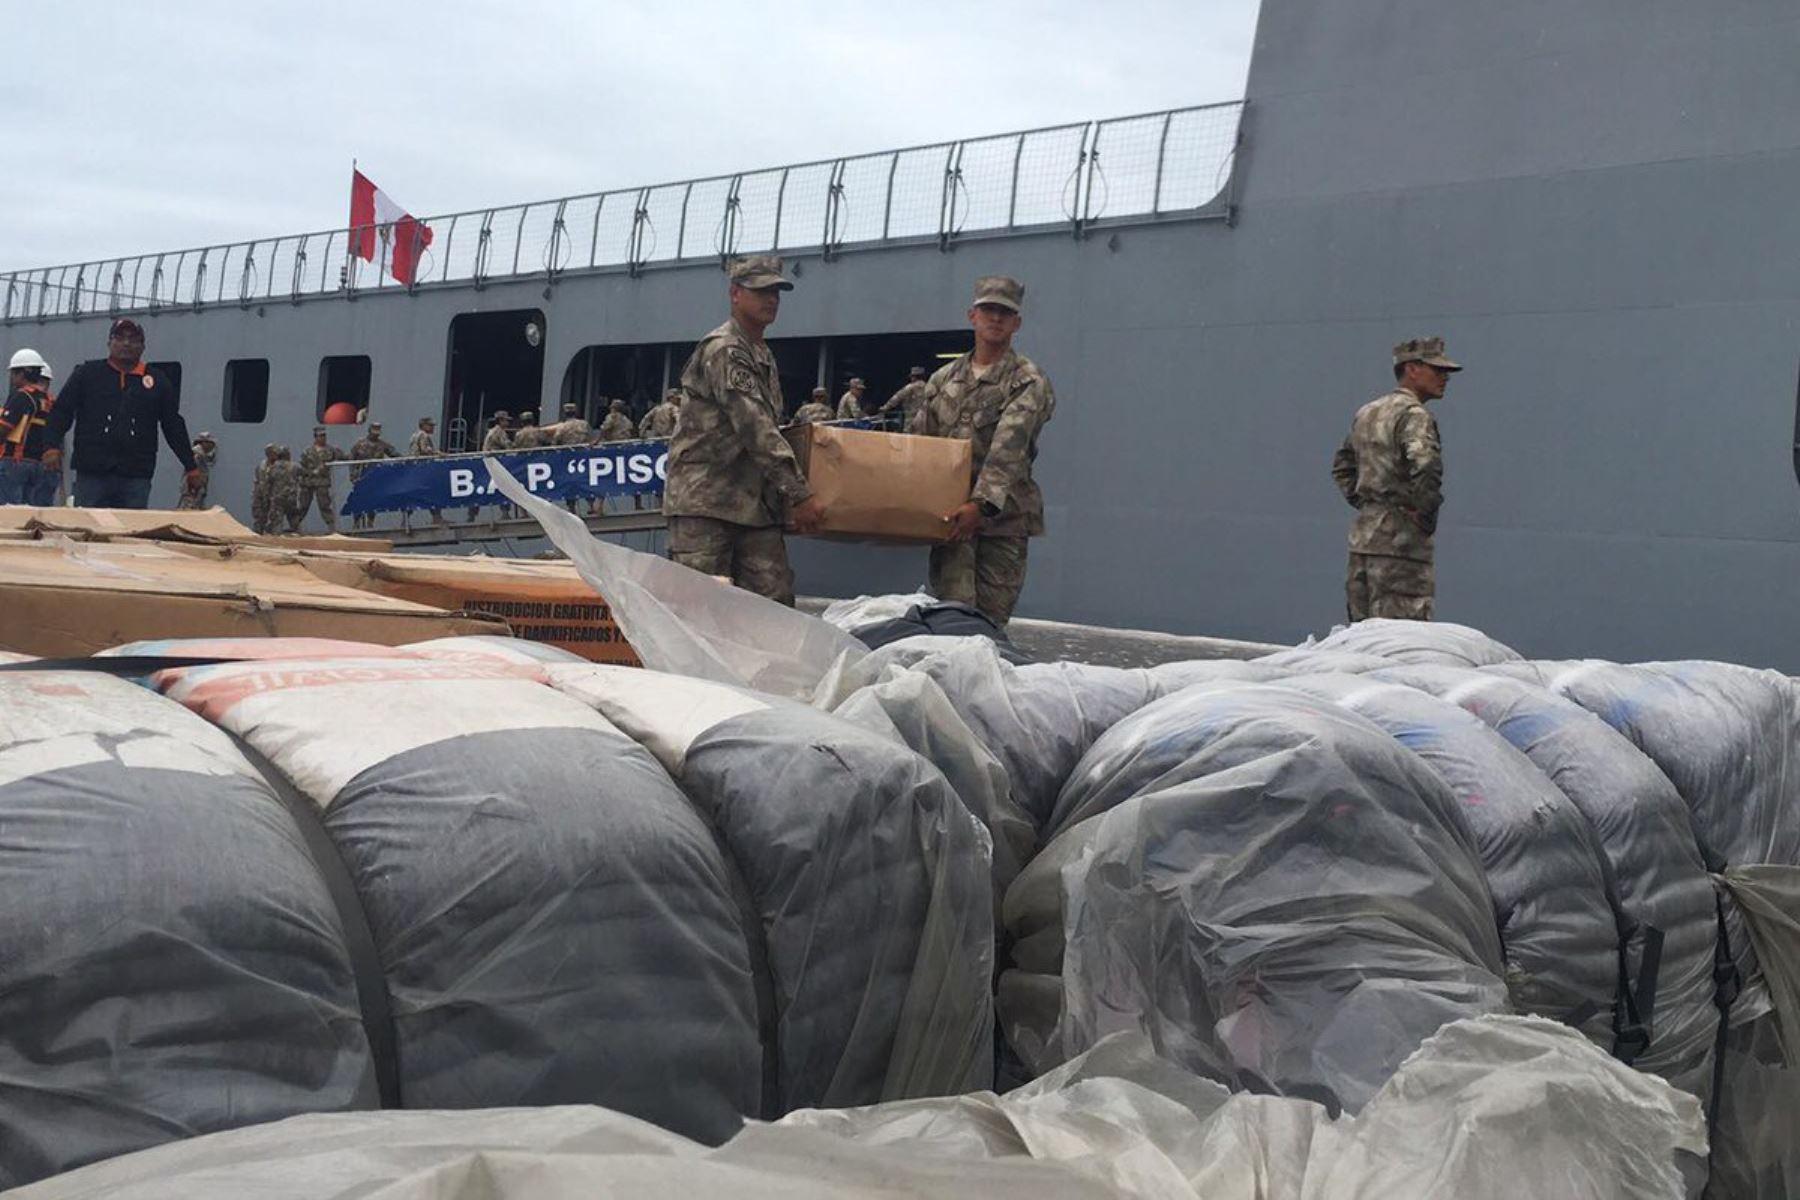 Fuerzas Armadas inician descarga de la ayuda humanitaria trasladada por el B.A.P. Pisco al puerto de Ilo, en Moquegua. ANDINA